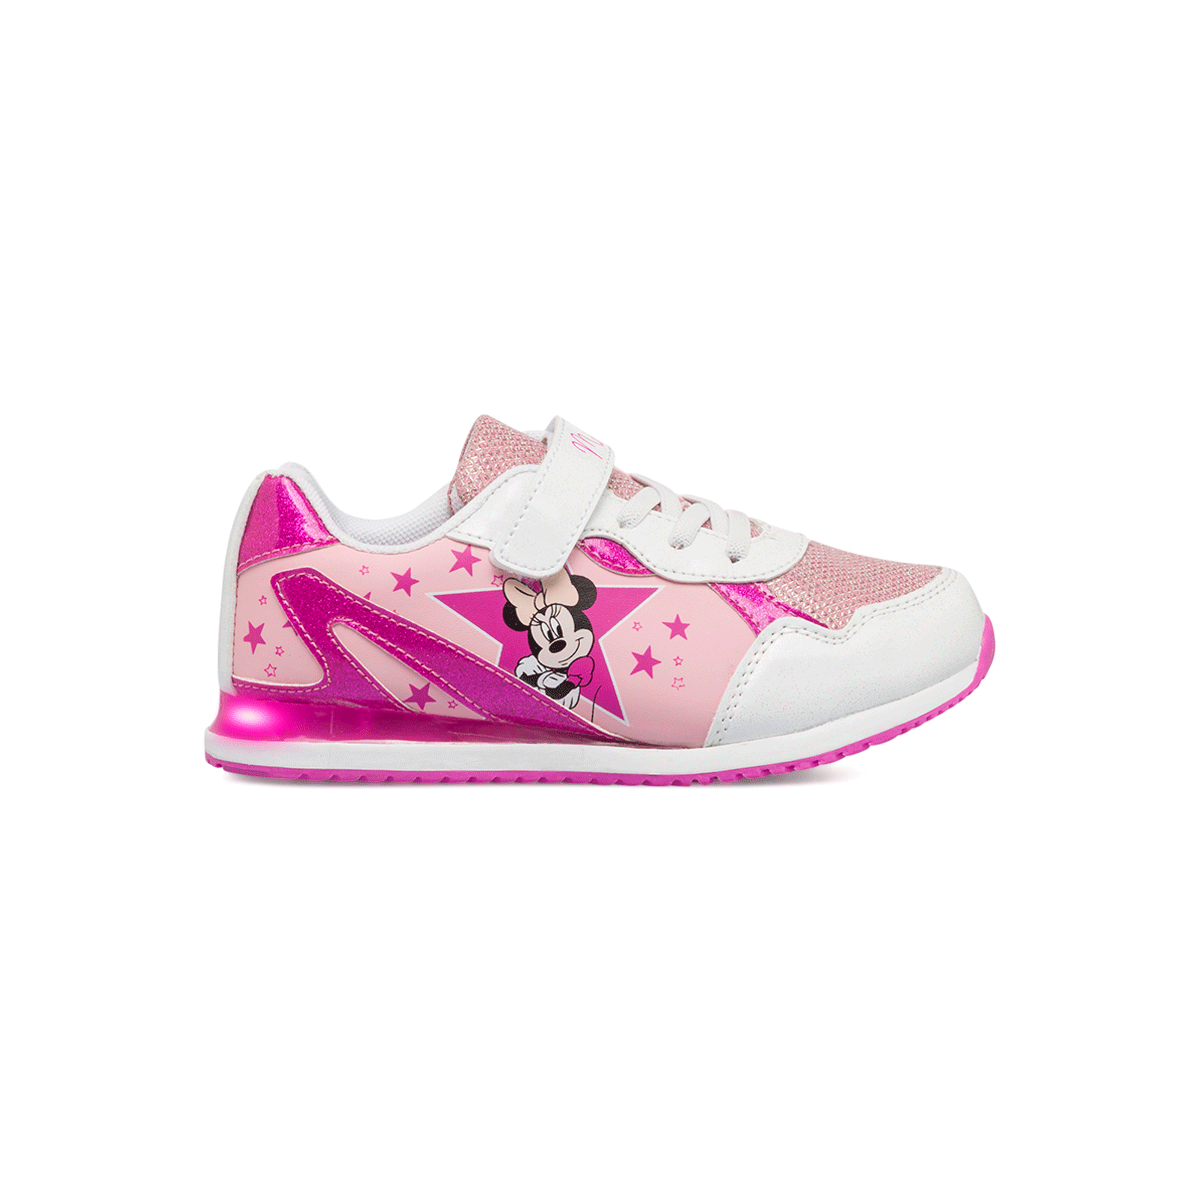 Sneakers primi passi rosa e fucsia da bambina con luci Minnie, Scarpe Bambini, SKU s333000112, Immagine 0